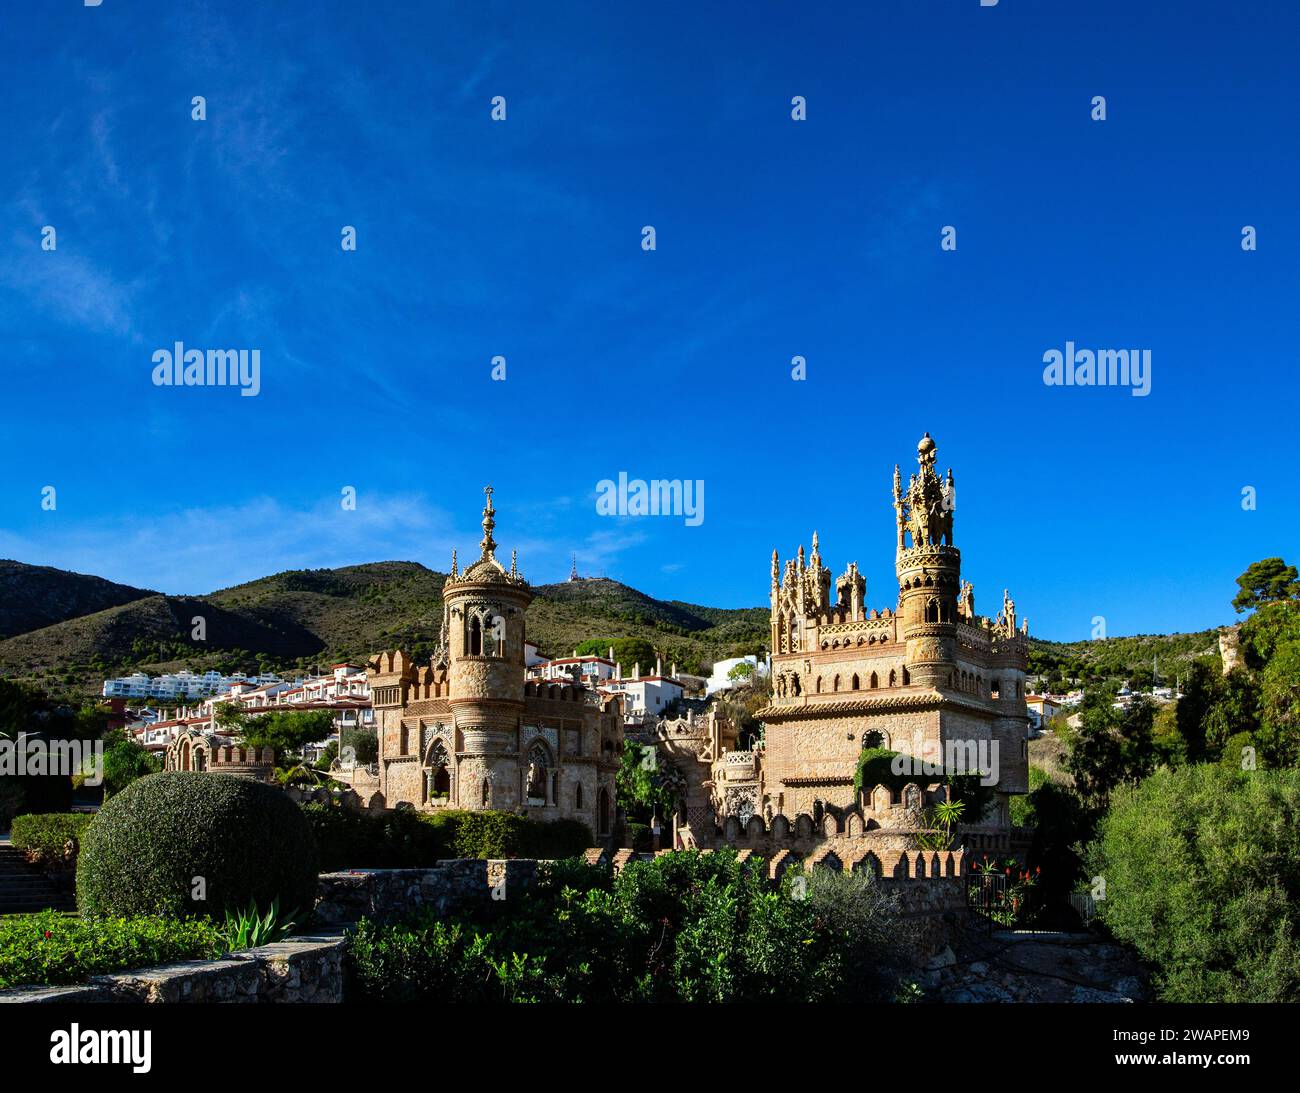 Le Castillo Monumento Colomares gothique, roman et byzantin, un monument à Benelmadena, province de Malaga, Espagne. Banque D'Images